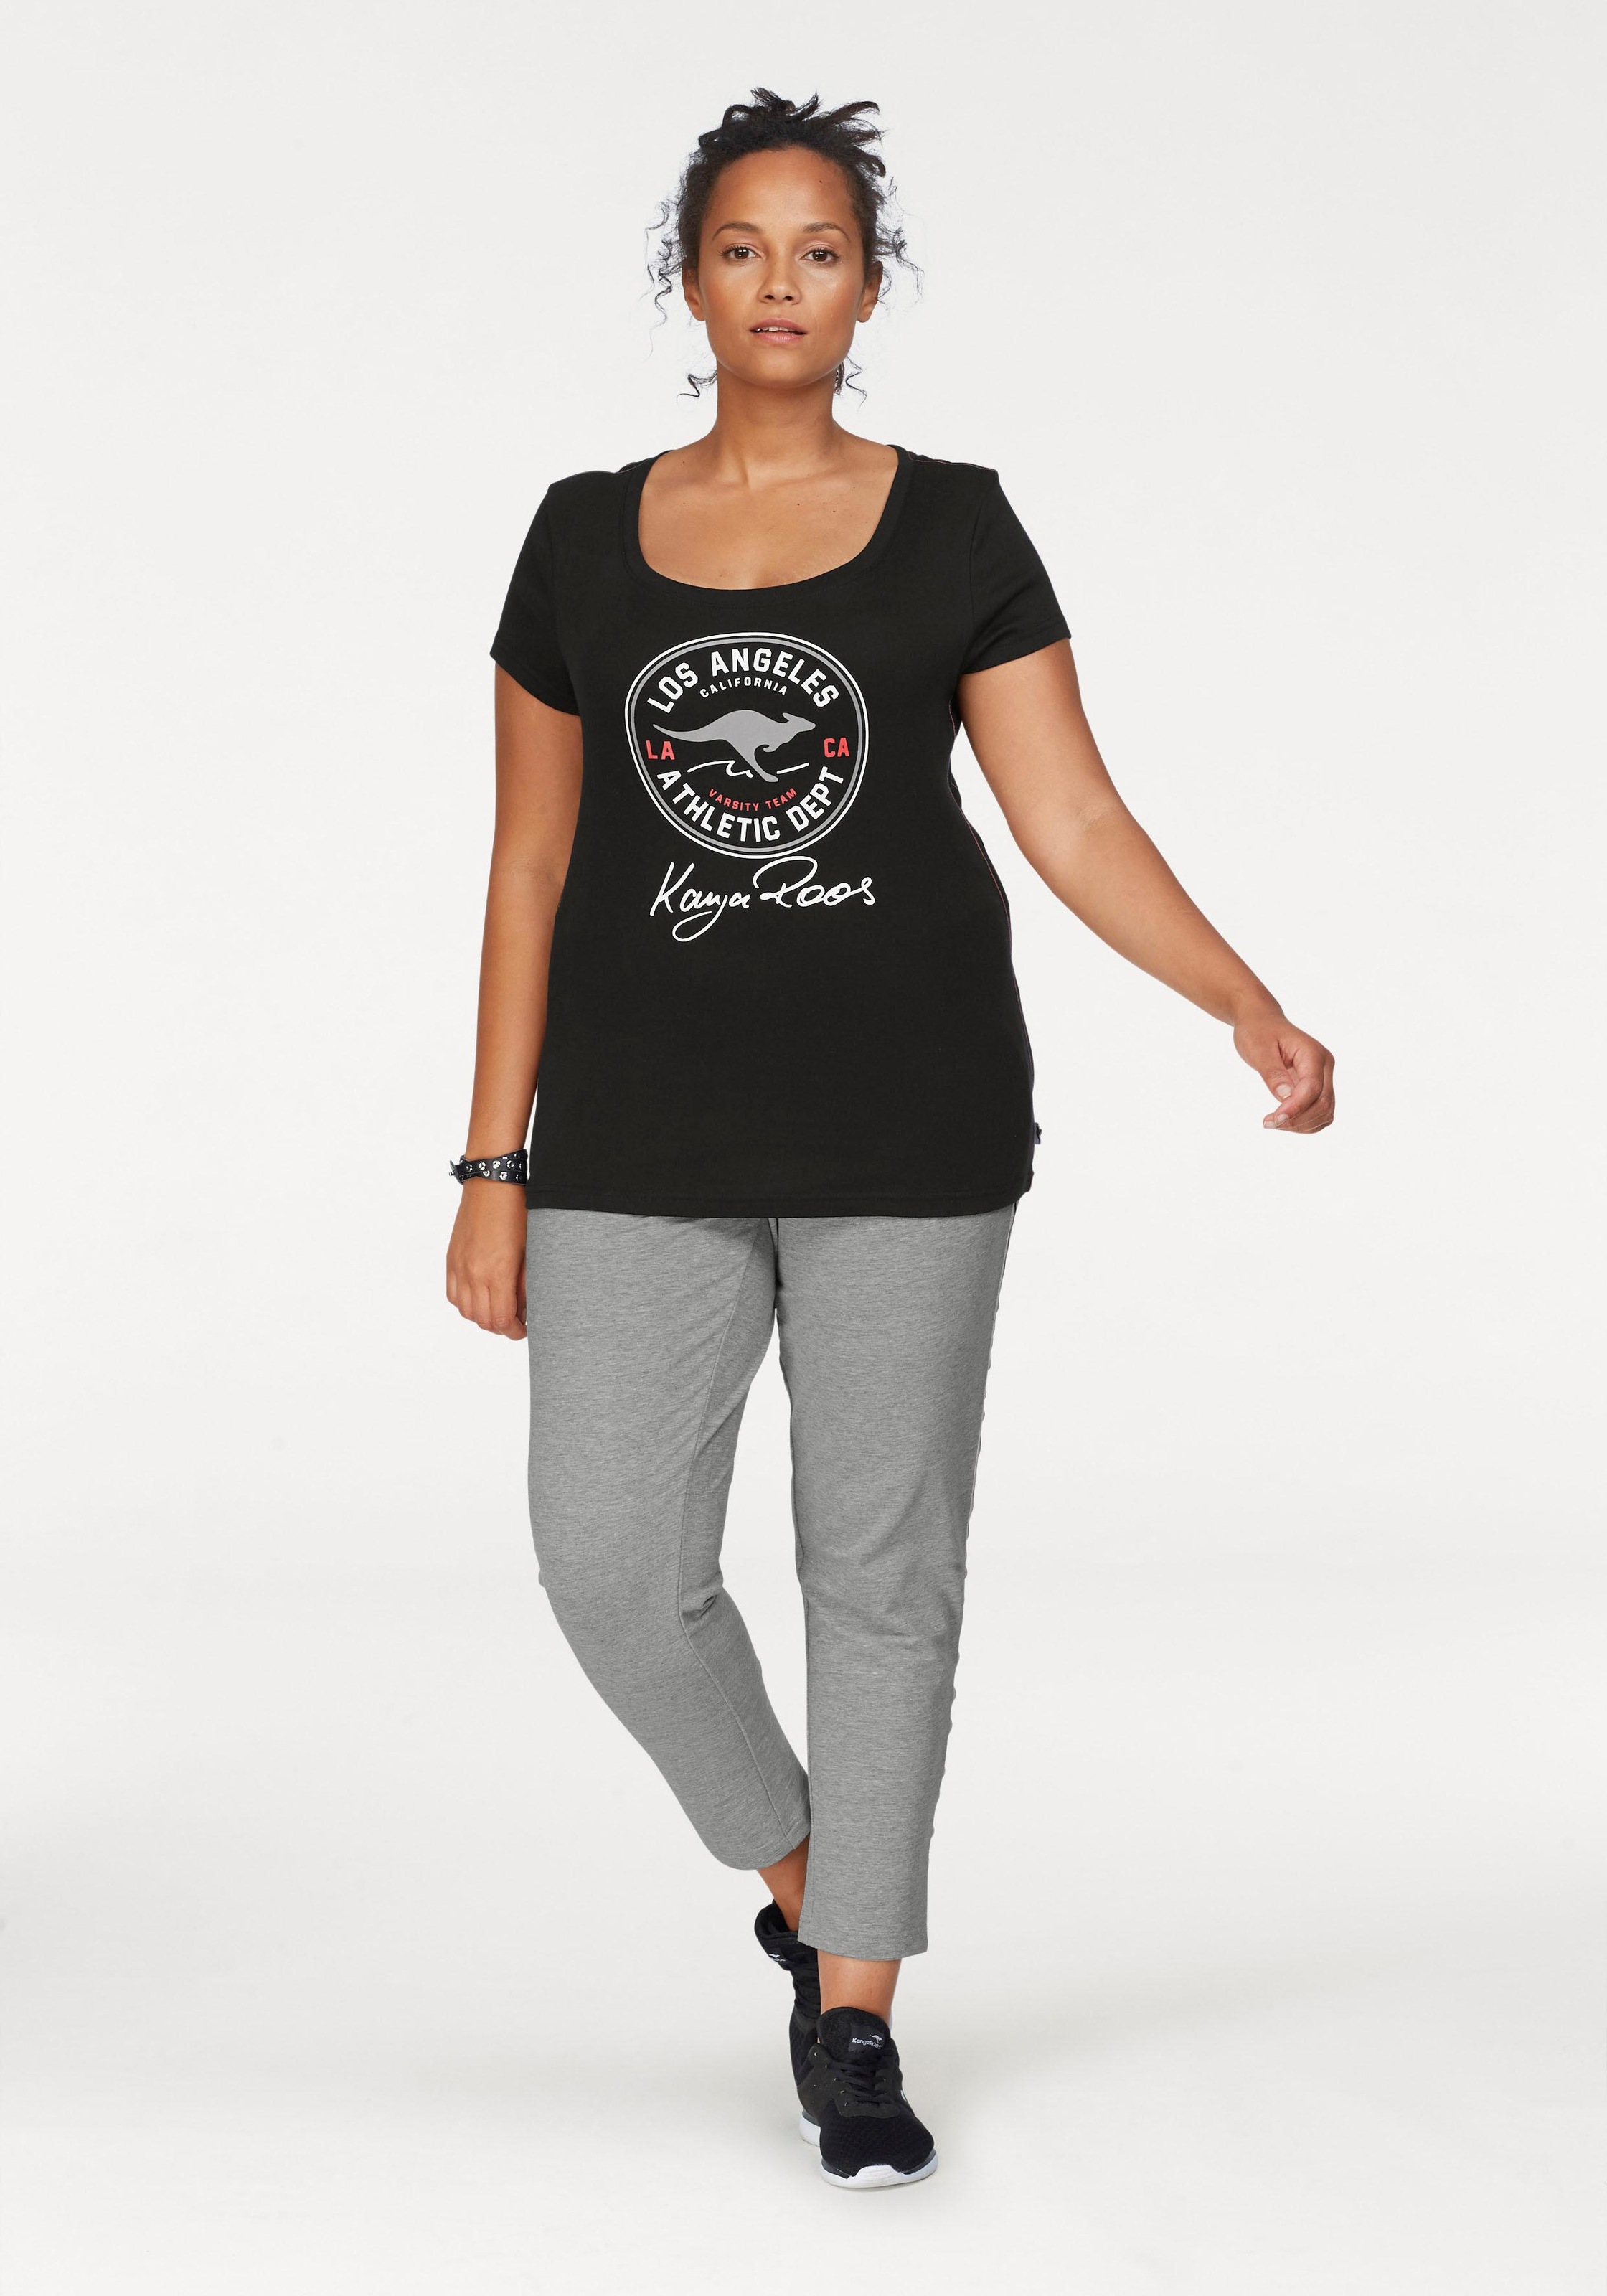 KangaROOS T-Shirt, Retro mit großem vorne bei Label-Druck OTTOversand